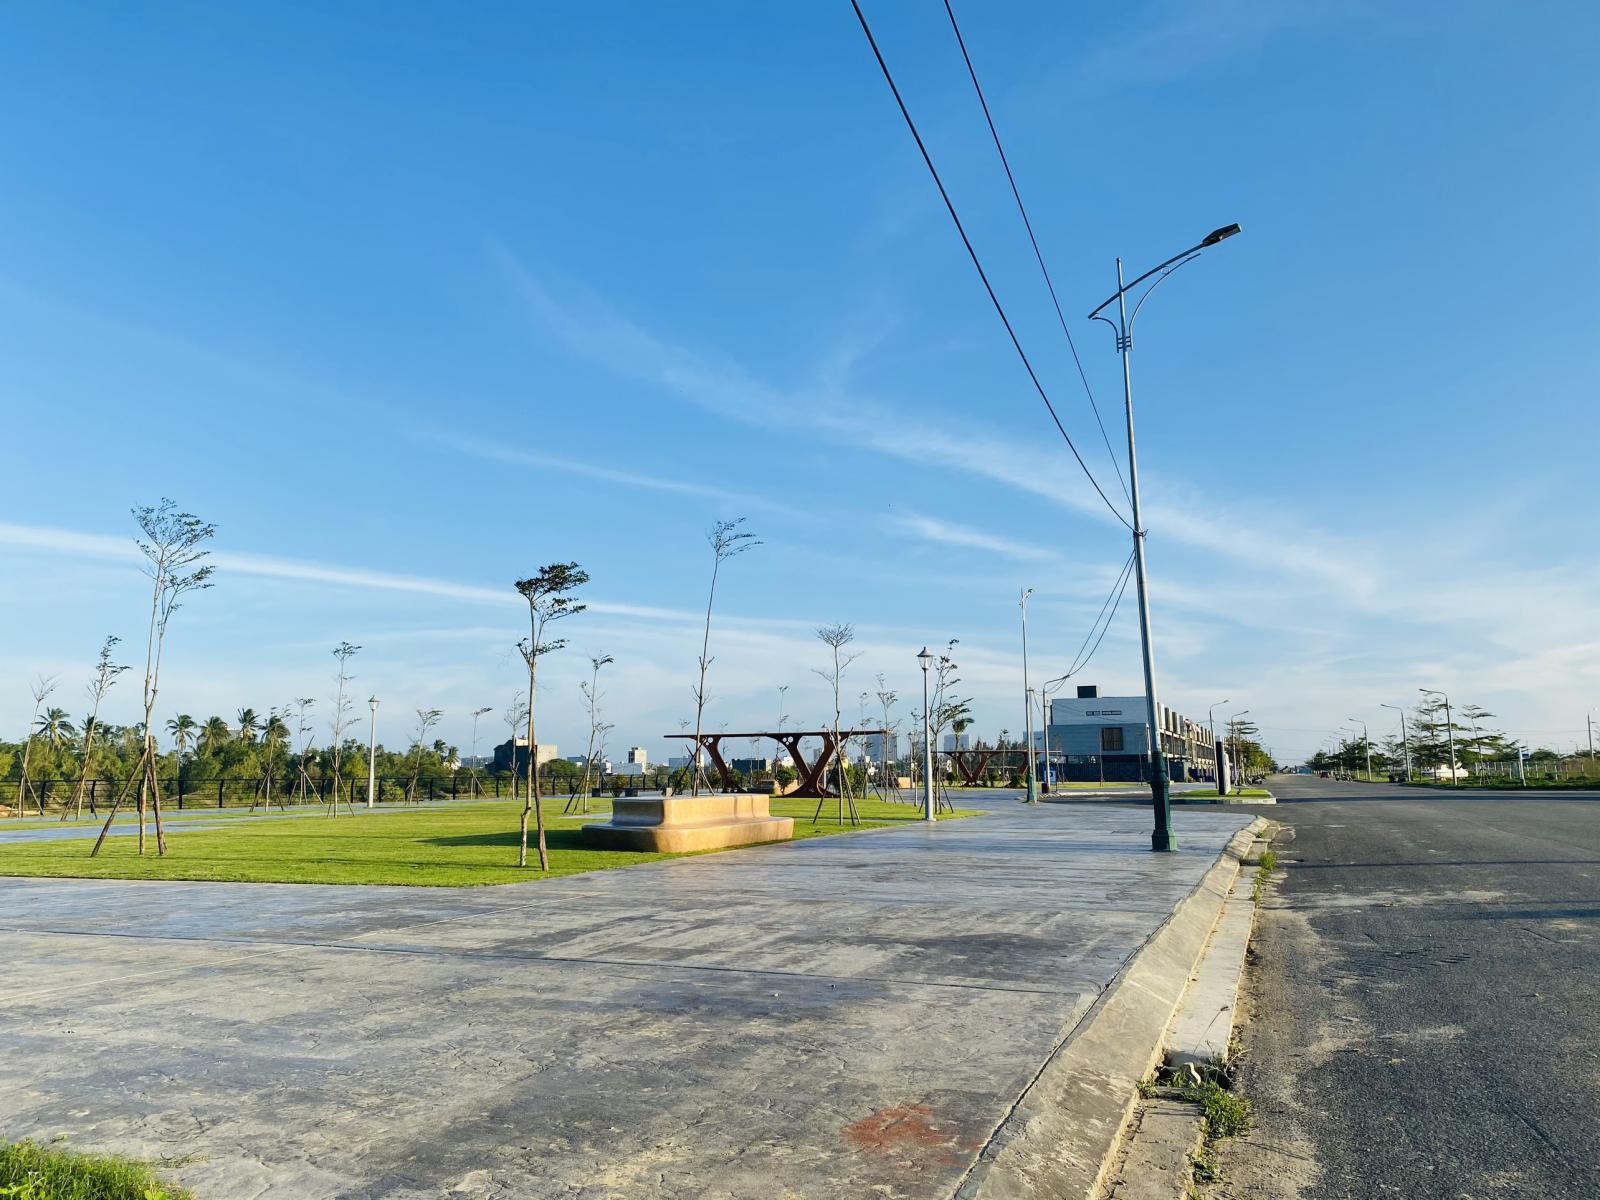 Chào bán lô đất nền biệt thự duy nhất thuộc phân khu cao cấp One River, Quận Ngũ Hành Sơn, Đà Nẵng